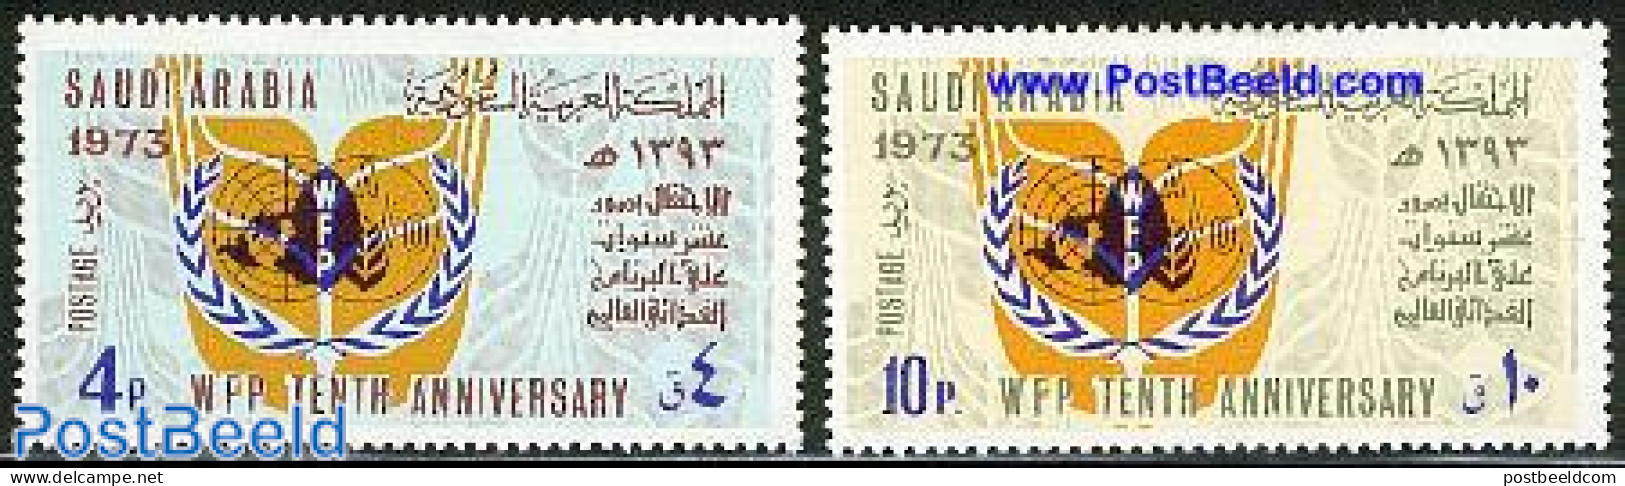 Saudi Arabia 1975 World Food Day 2v, Unused (hinged), Health - Food & Drink - Ernährung